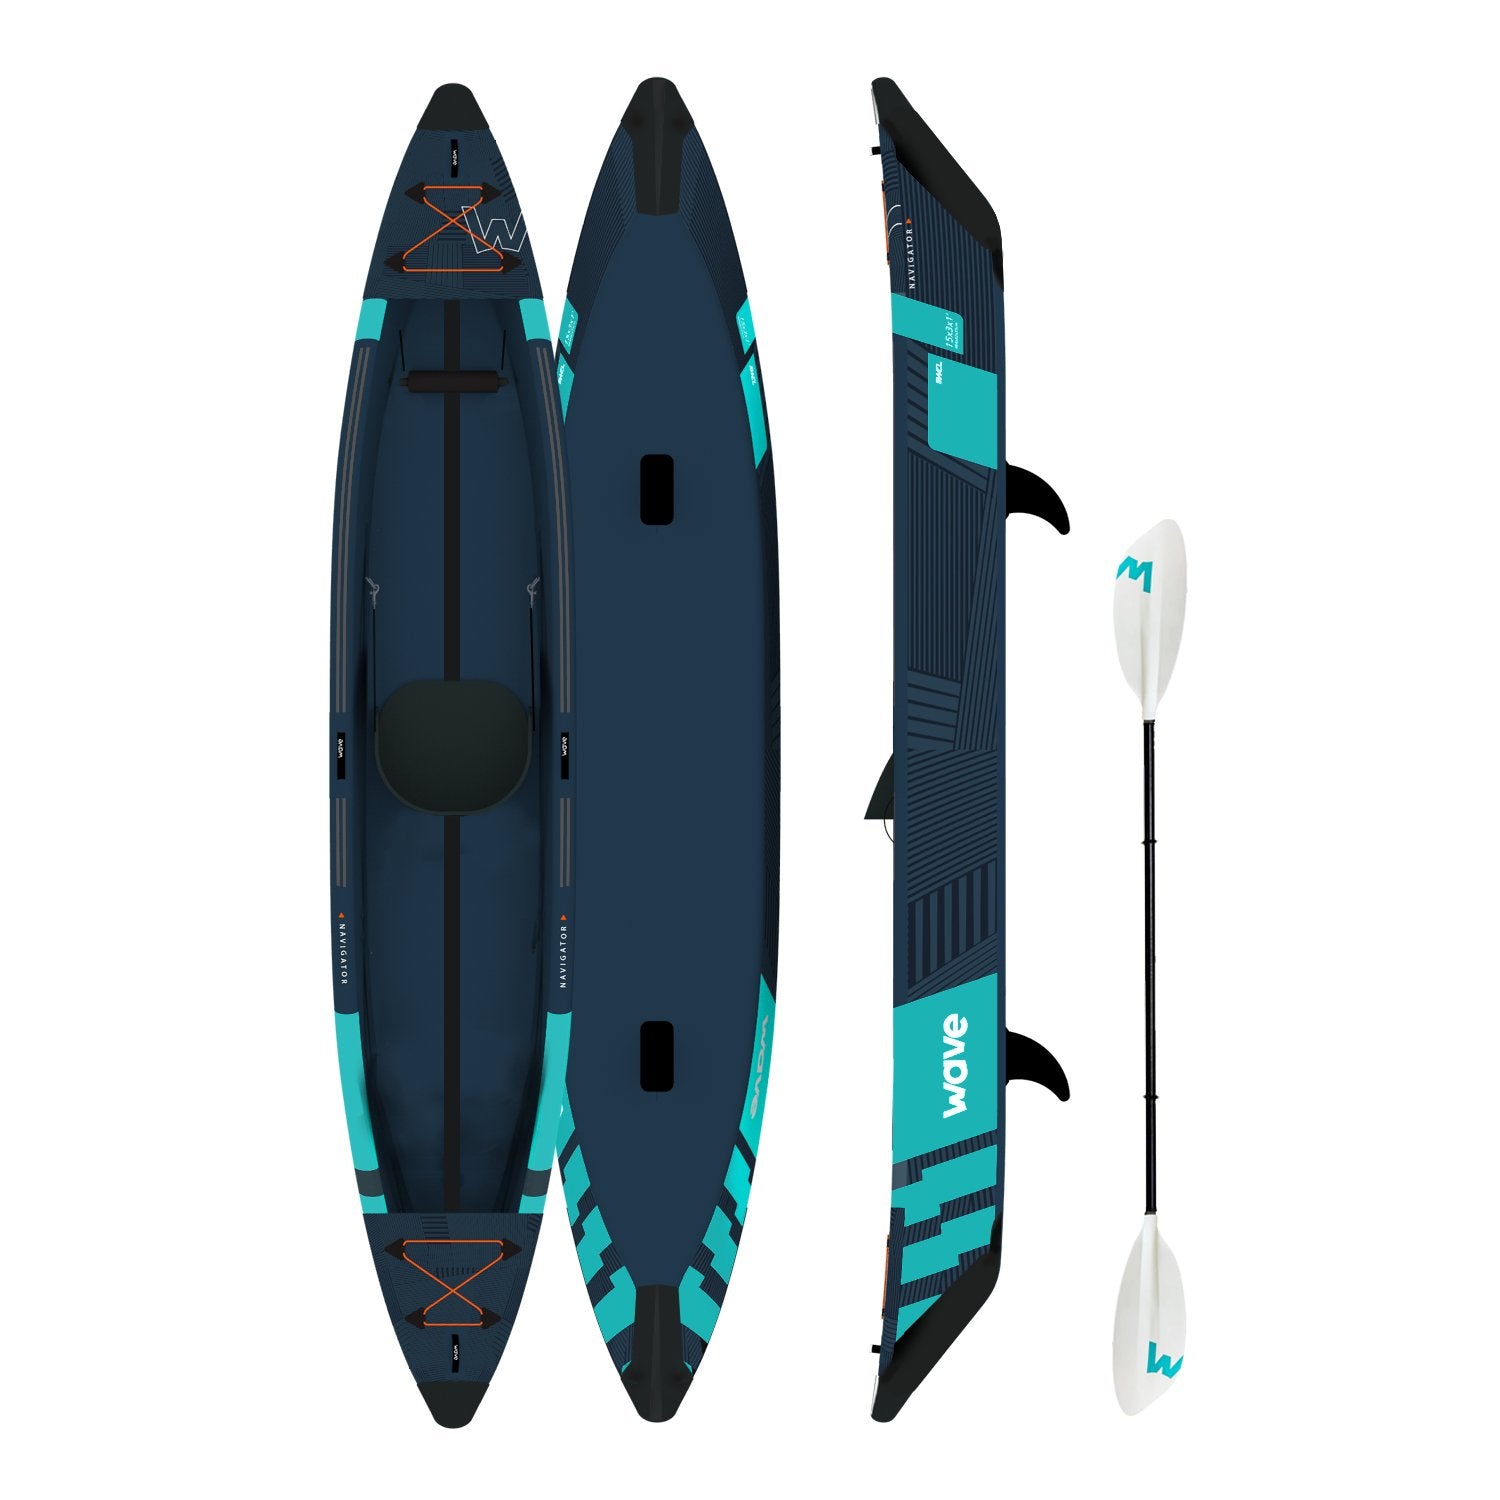 Navigator | Inflatable Kayak | Drop-Stitch | 1-Seater - Wave Sups EU